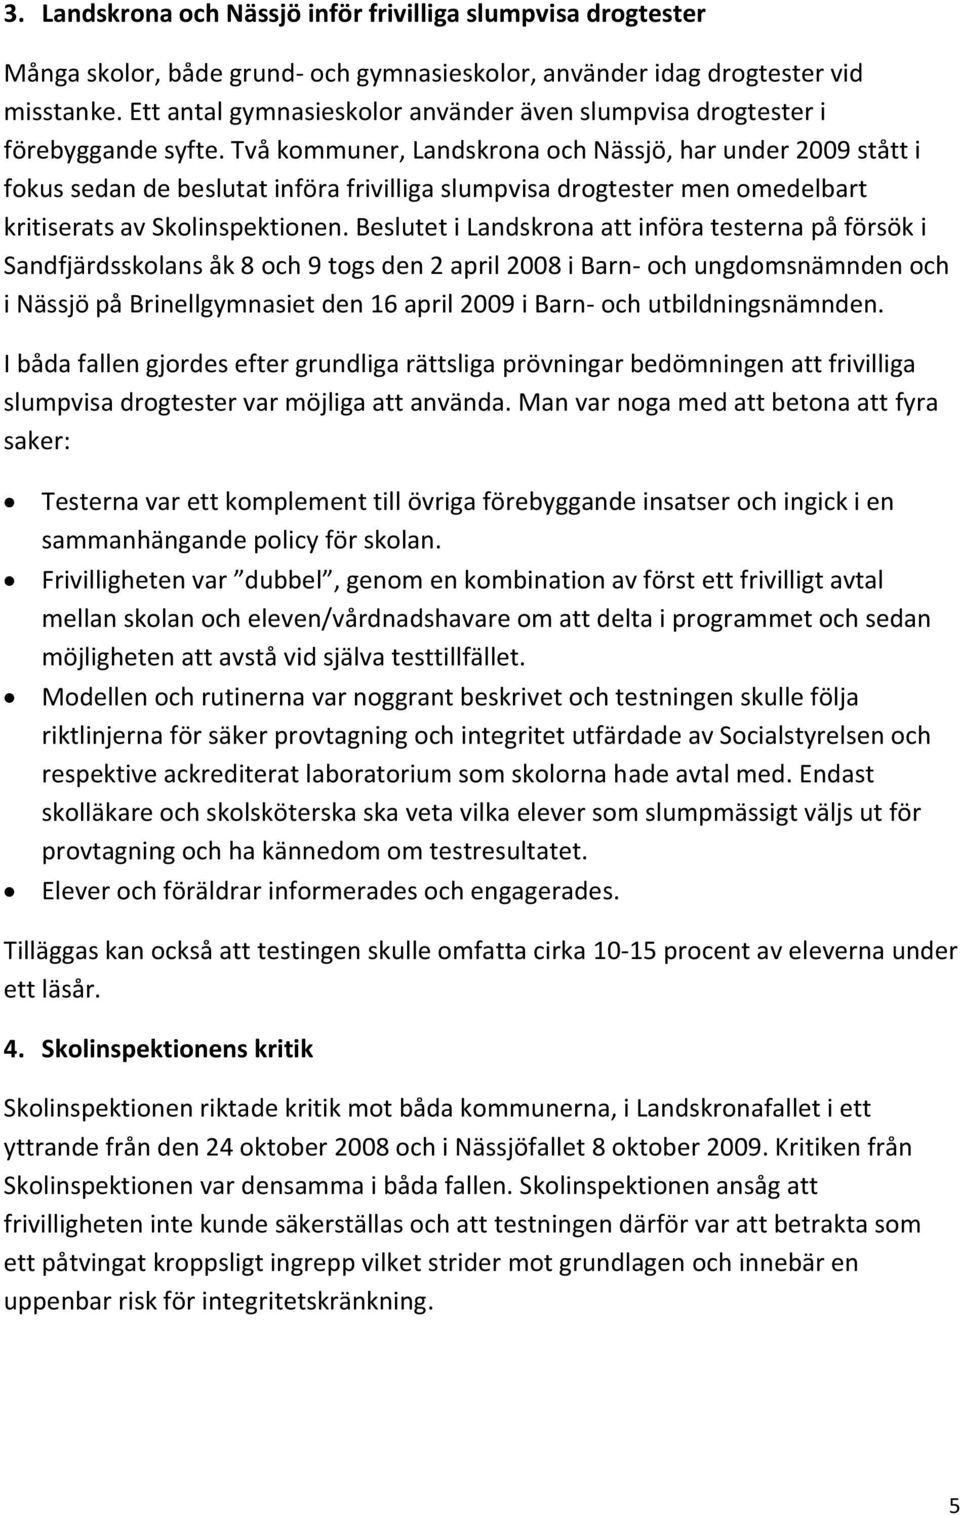 Två kommuner, Landskrona och Nässjö, har under 2009 stått i fokus sedan de beslutat införa frivilliga slumpvisa drogtester men omedelbart kritiserats av Skolinspektionen.